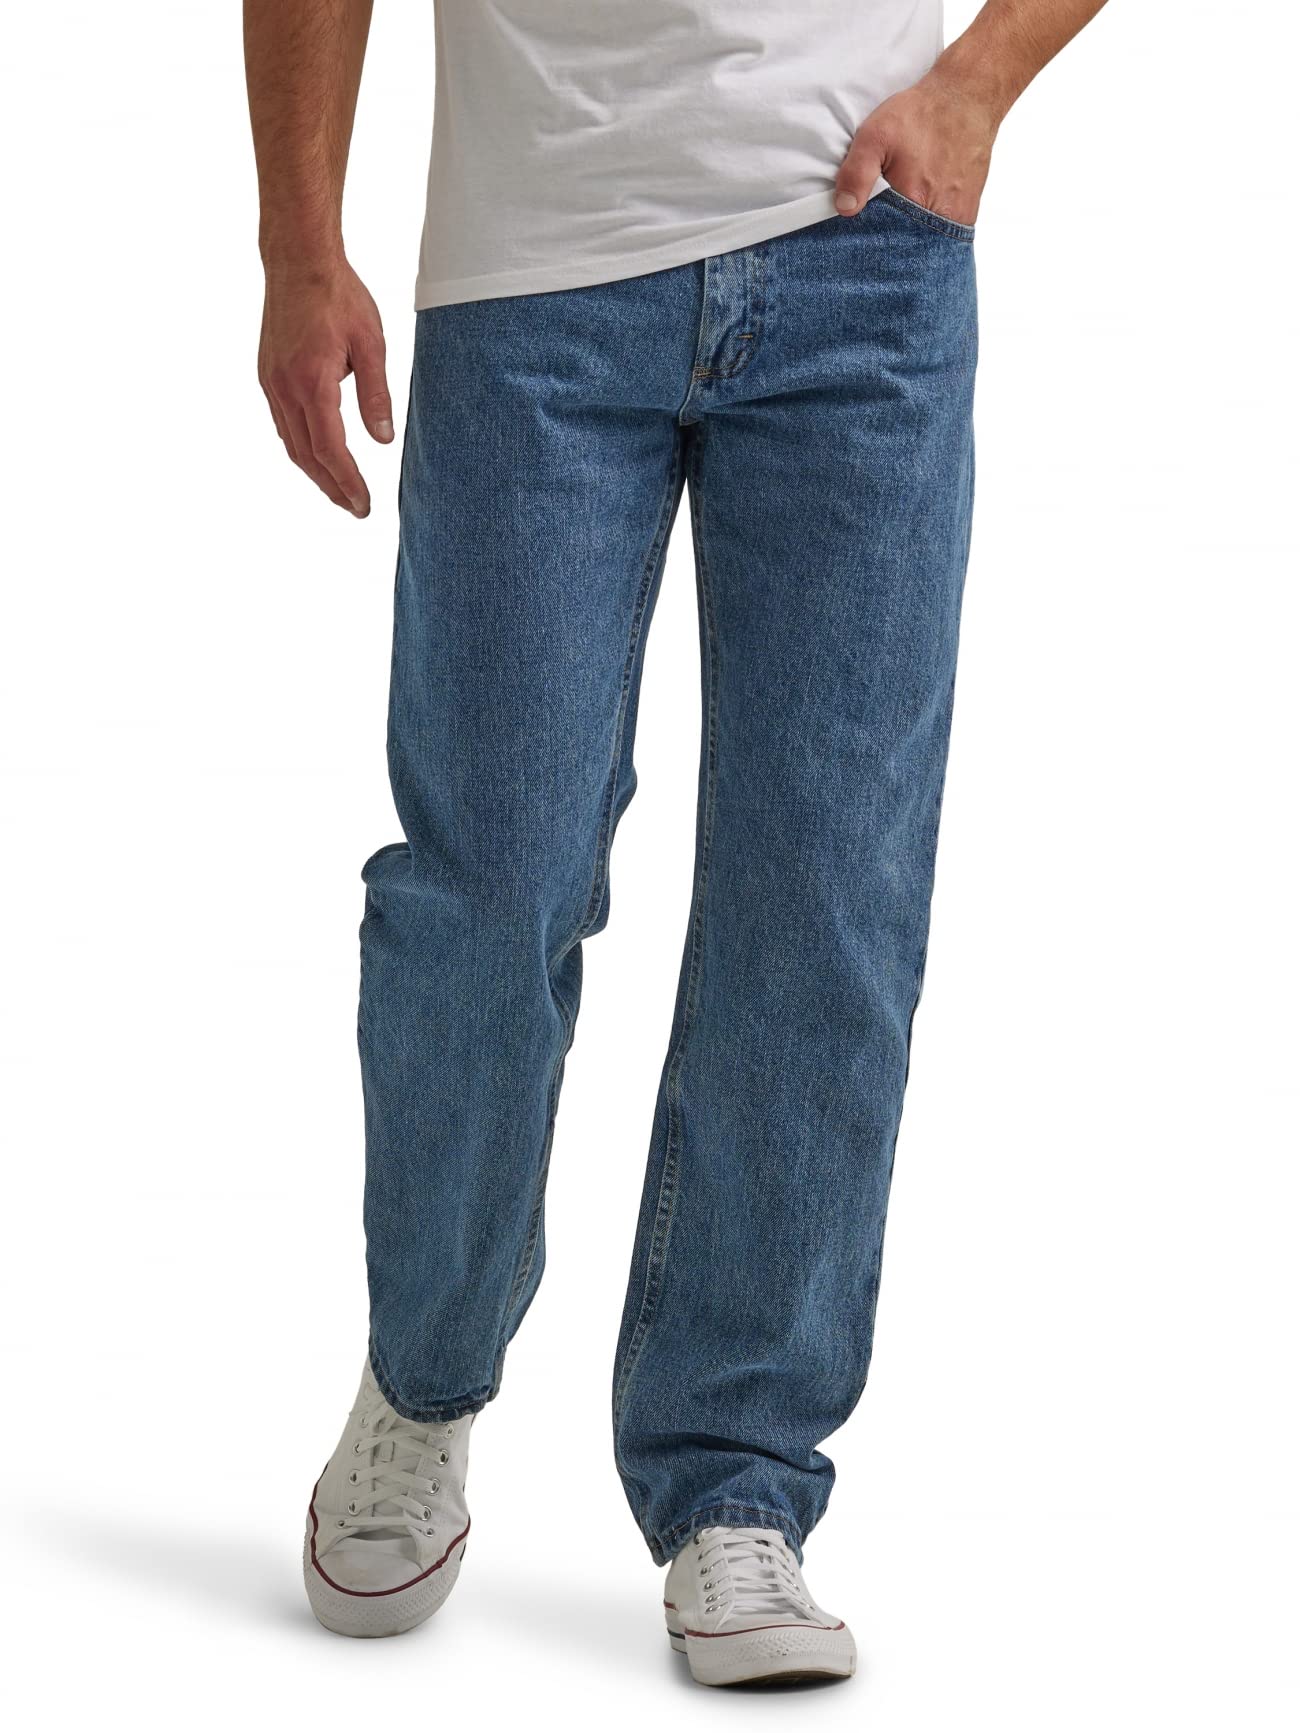 Wrangler Authentics Men's Classic 5-Pocket Regular Fit Cotton Jean, Vintage Blue Grey, 34W x 29L